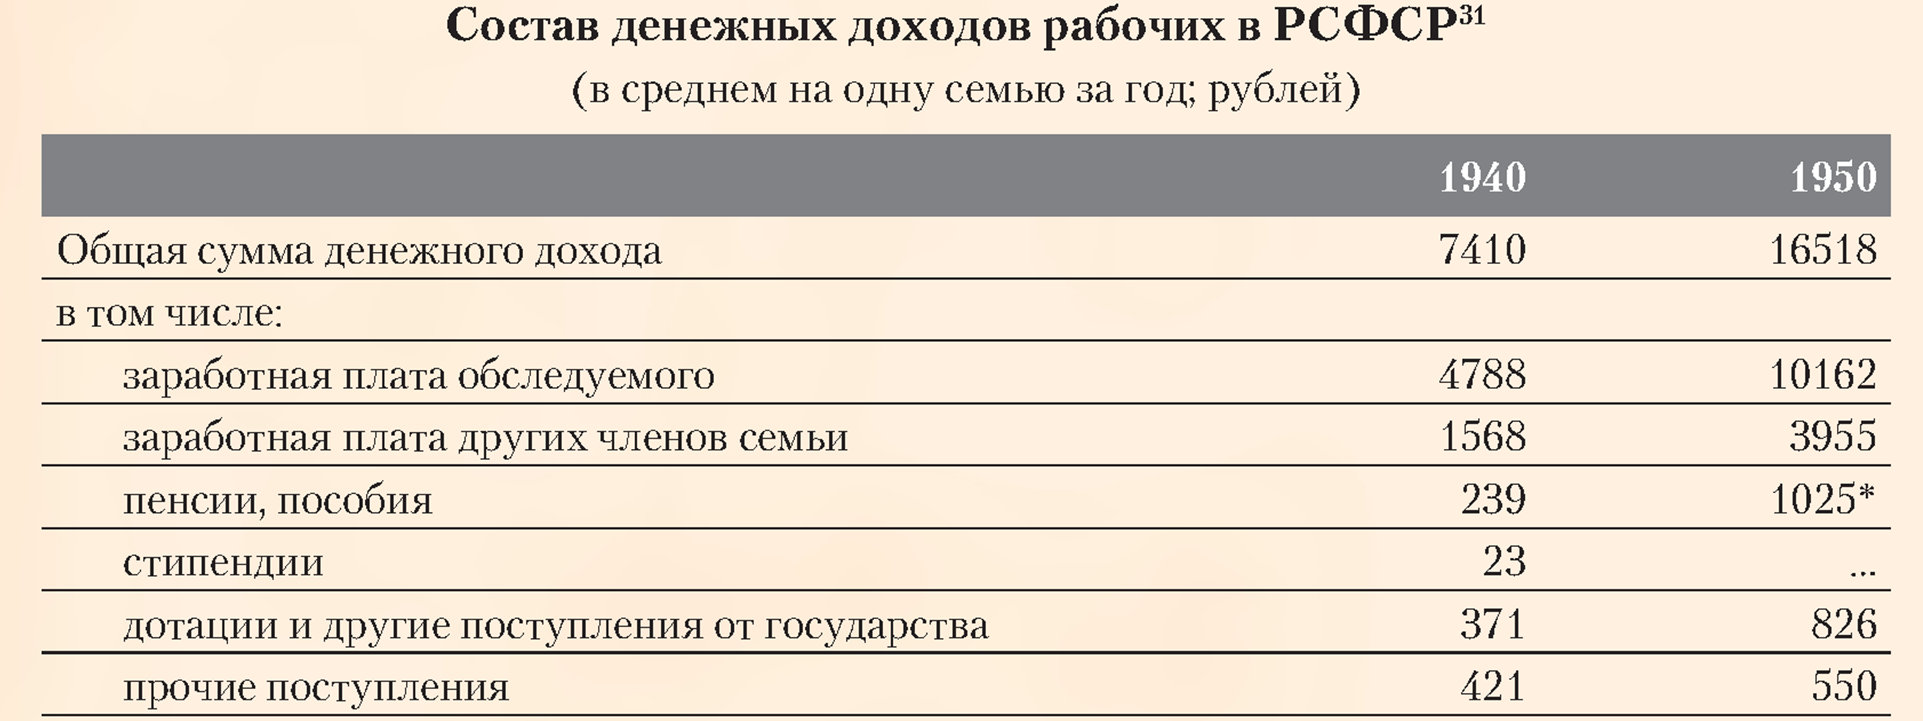 Состав денежных доходов рабочих в РСФСР